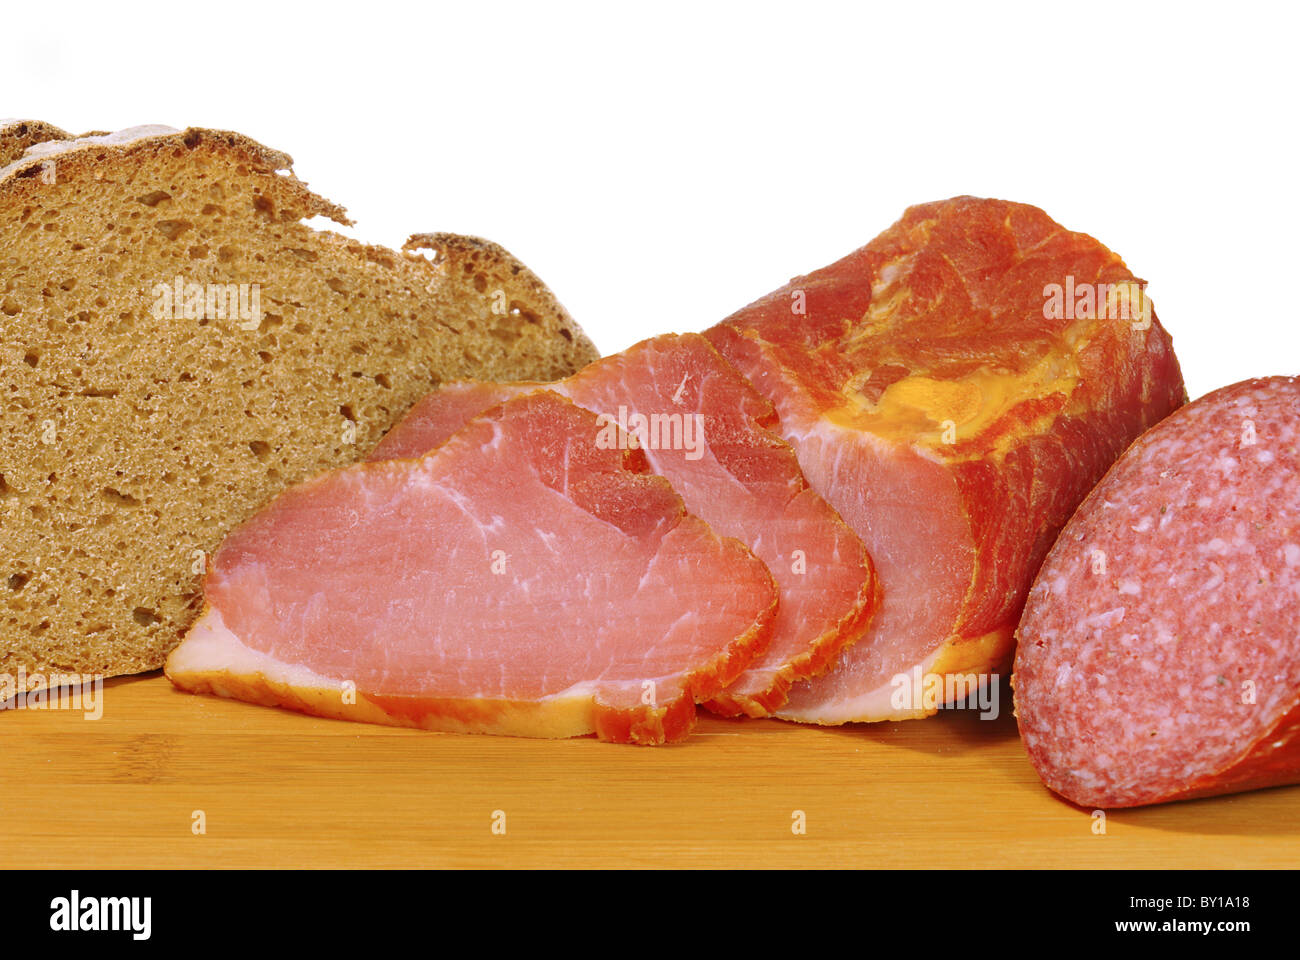 Schinken-Brot-Salami - Schinken-Brot Salami 02 Stockfoto